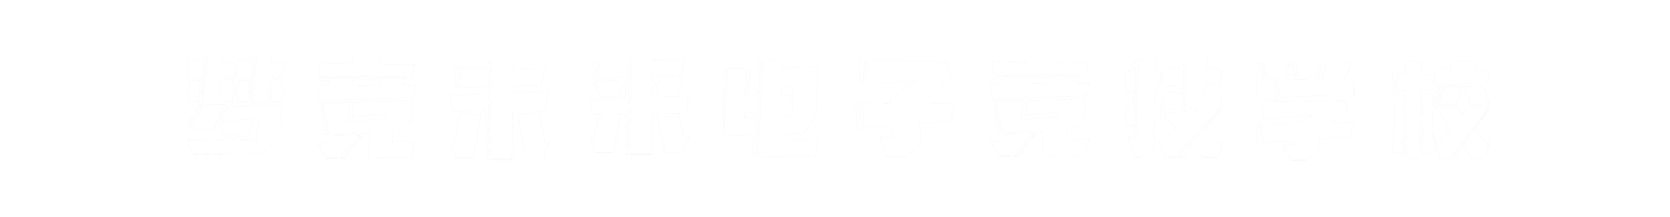 梦竞未来湖州banner字